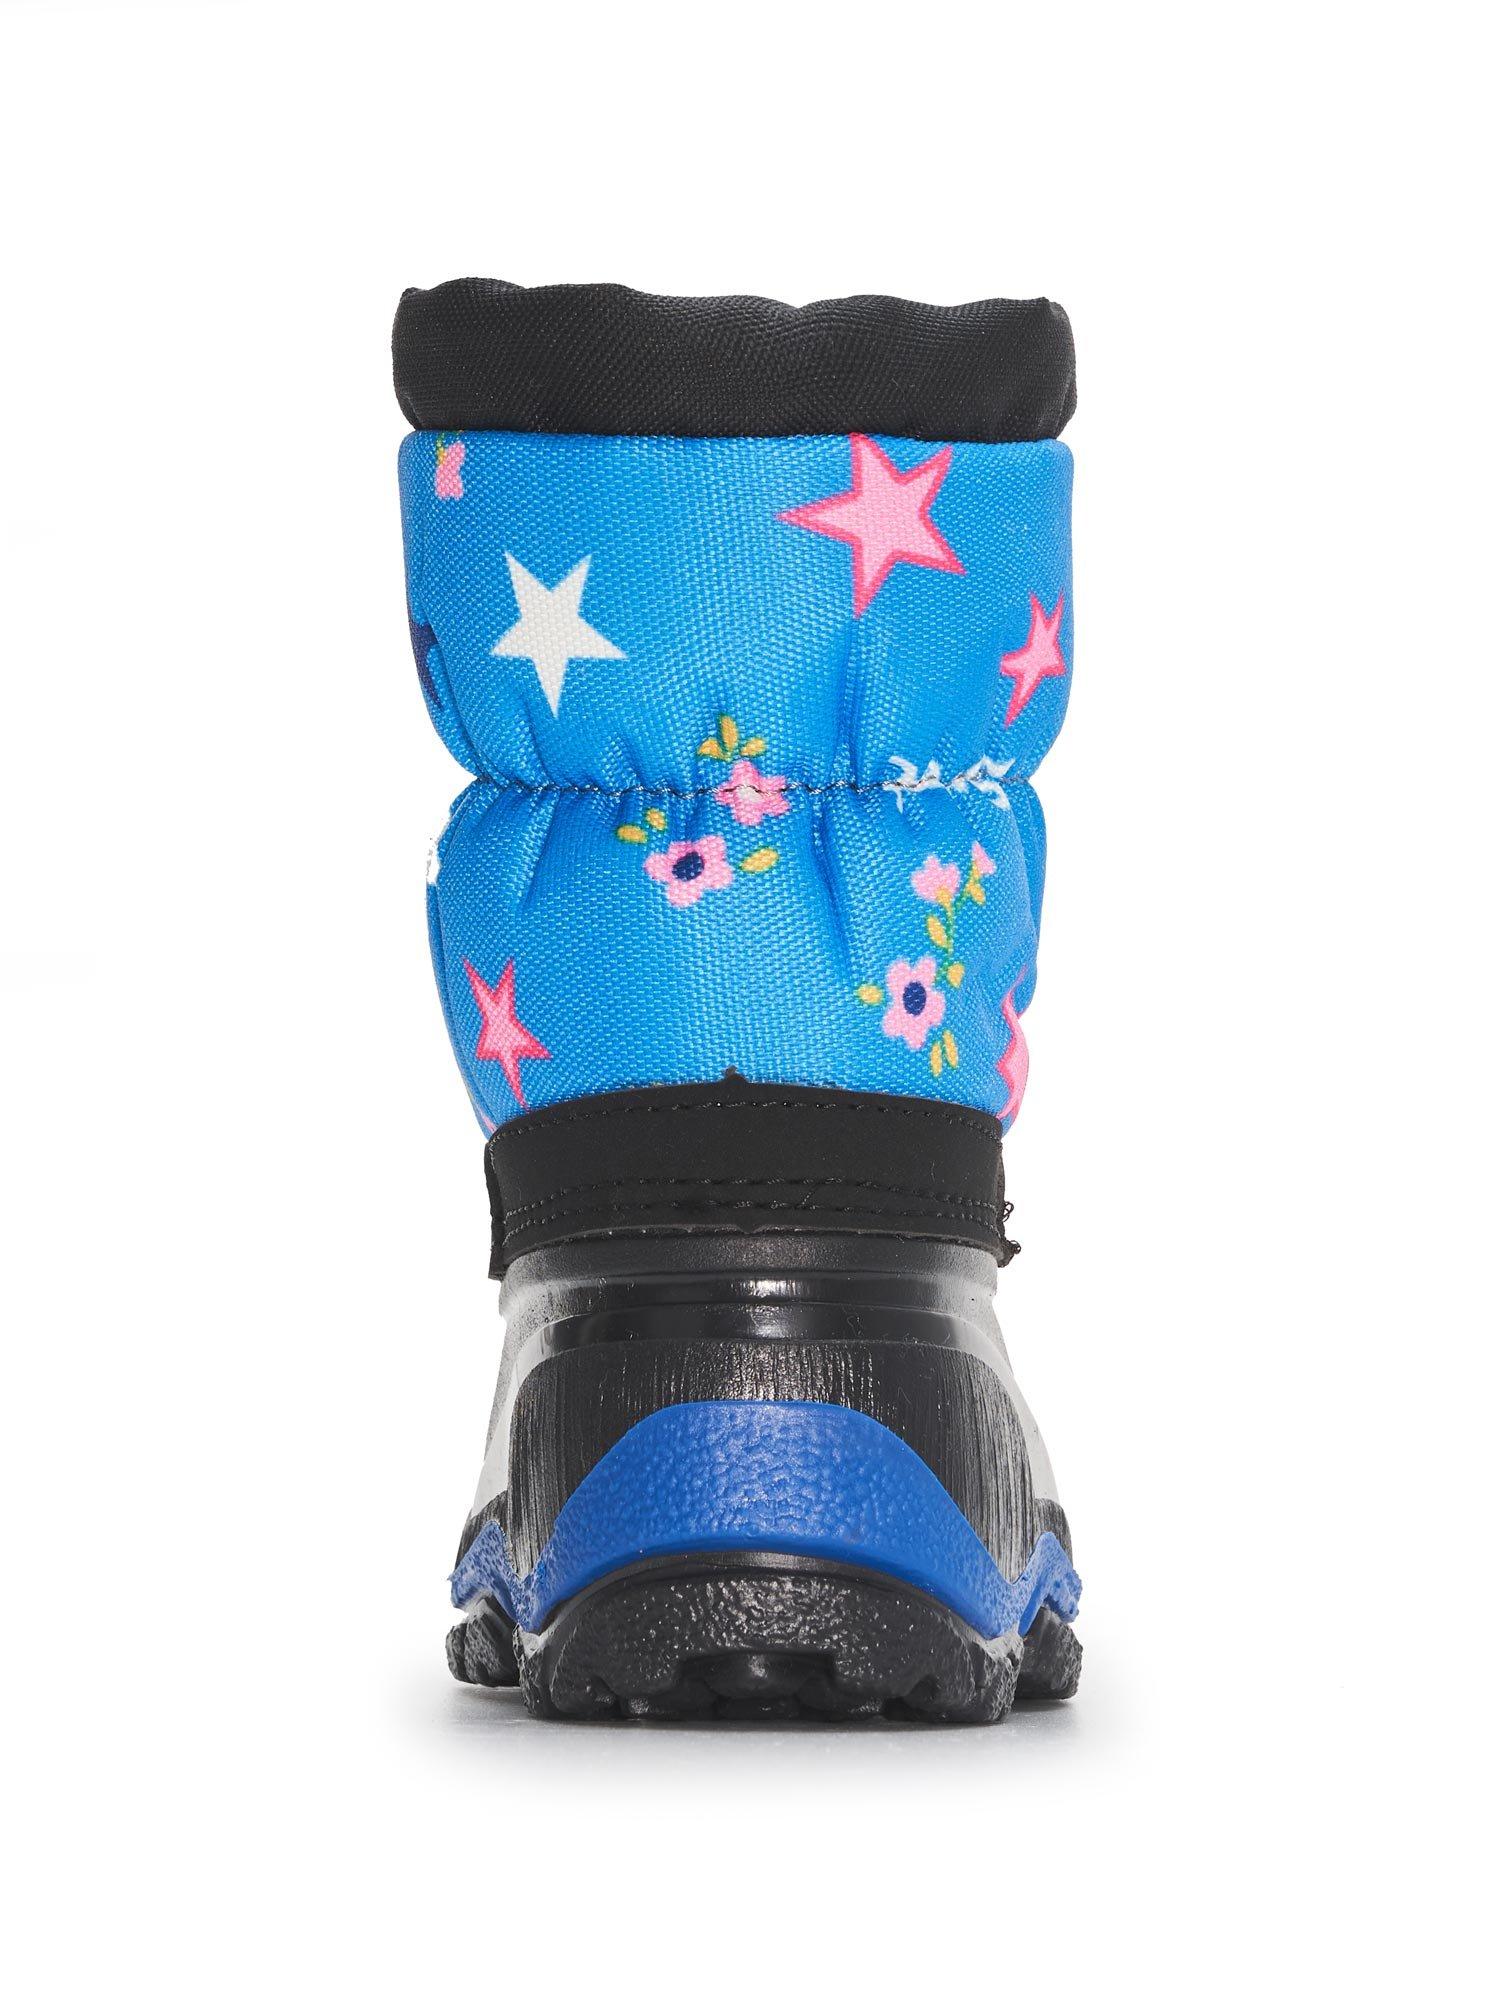 Selected image for BRILLE Zimske čizme za devojčice Stars plave